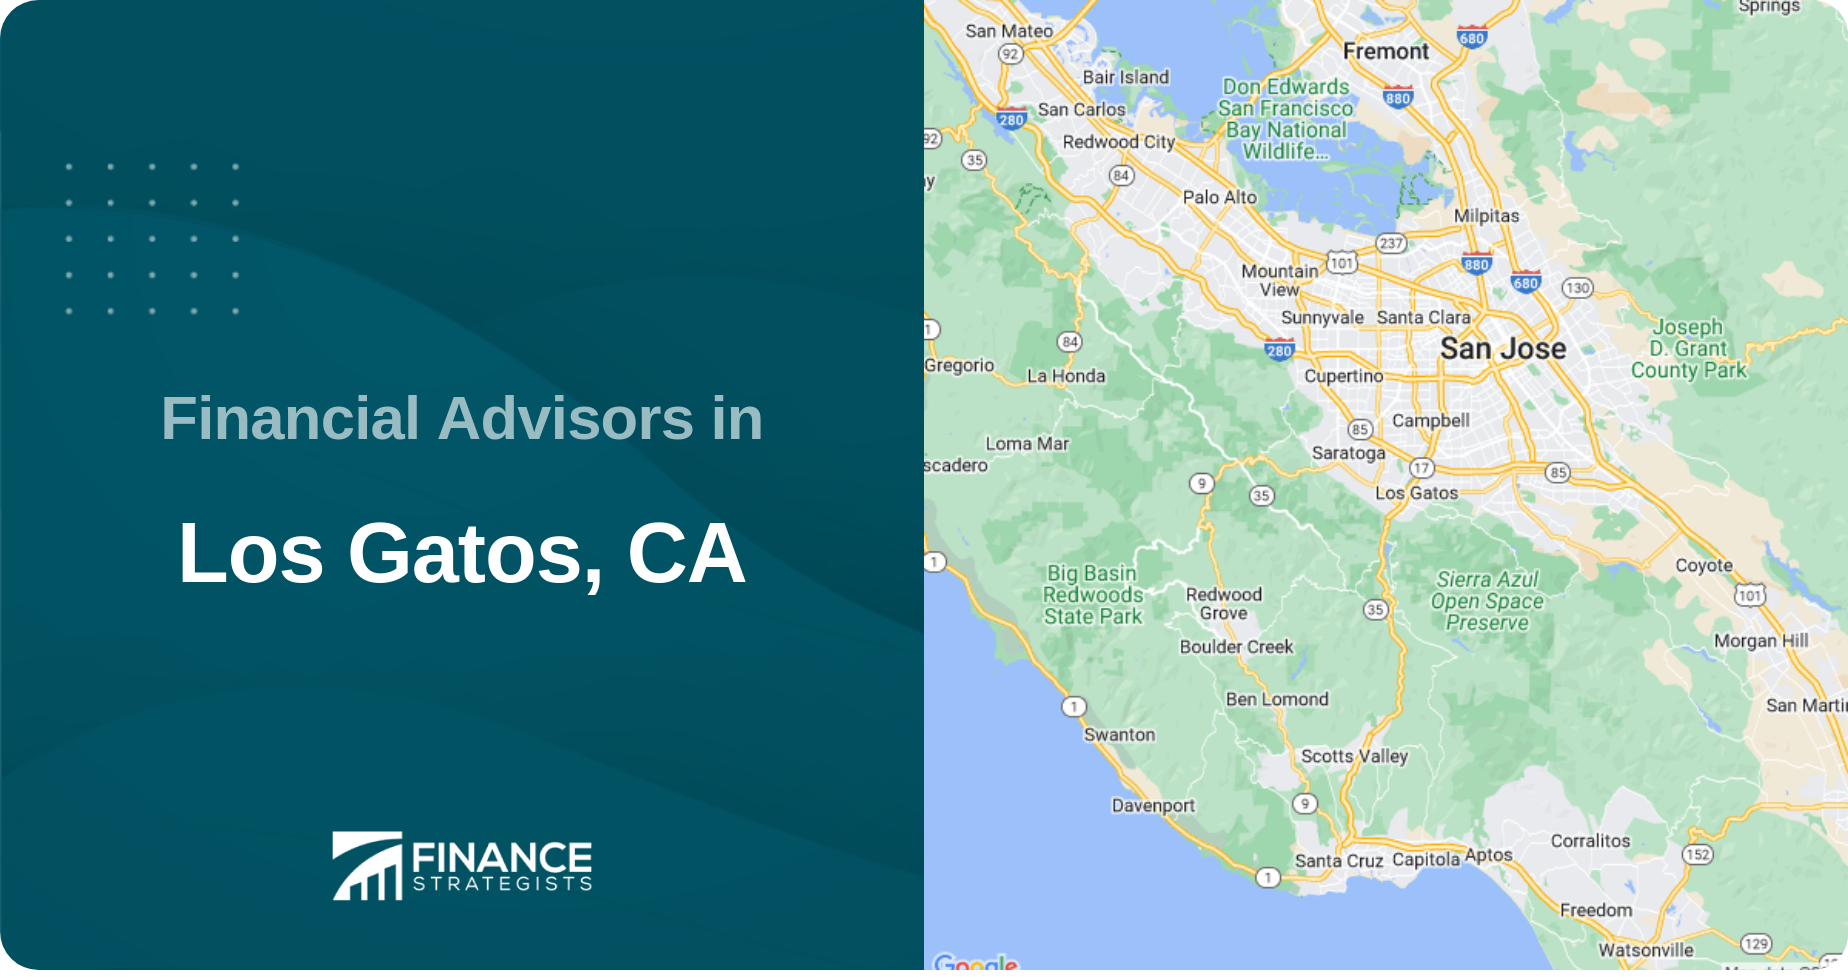 Financial Advisors in Los Gatos, CA